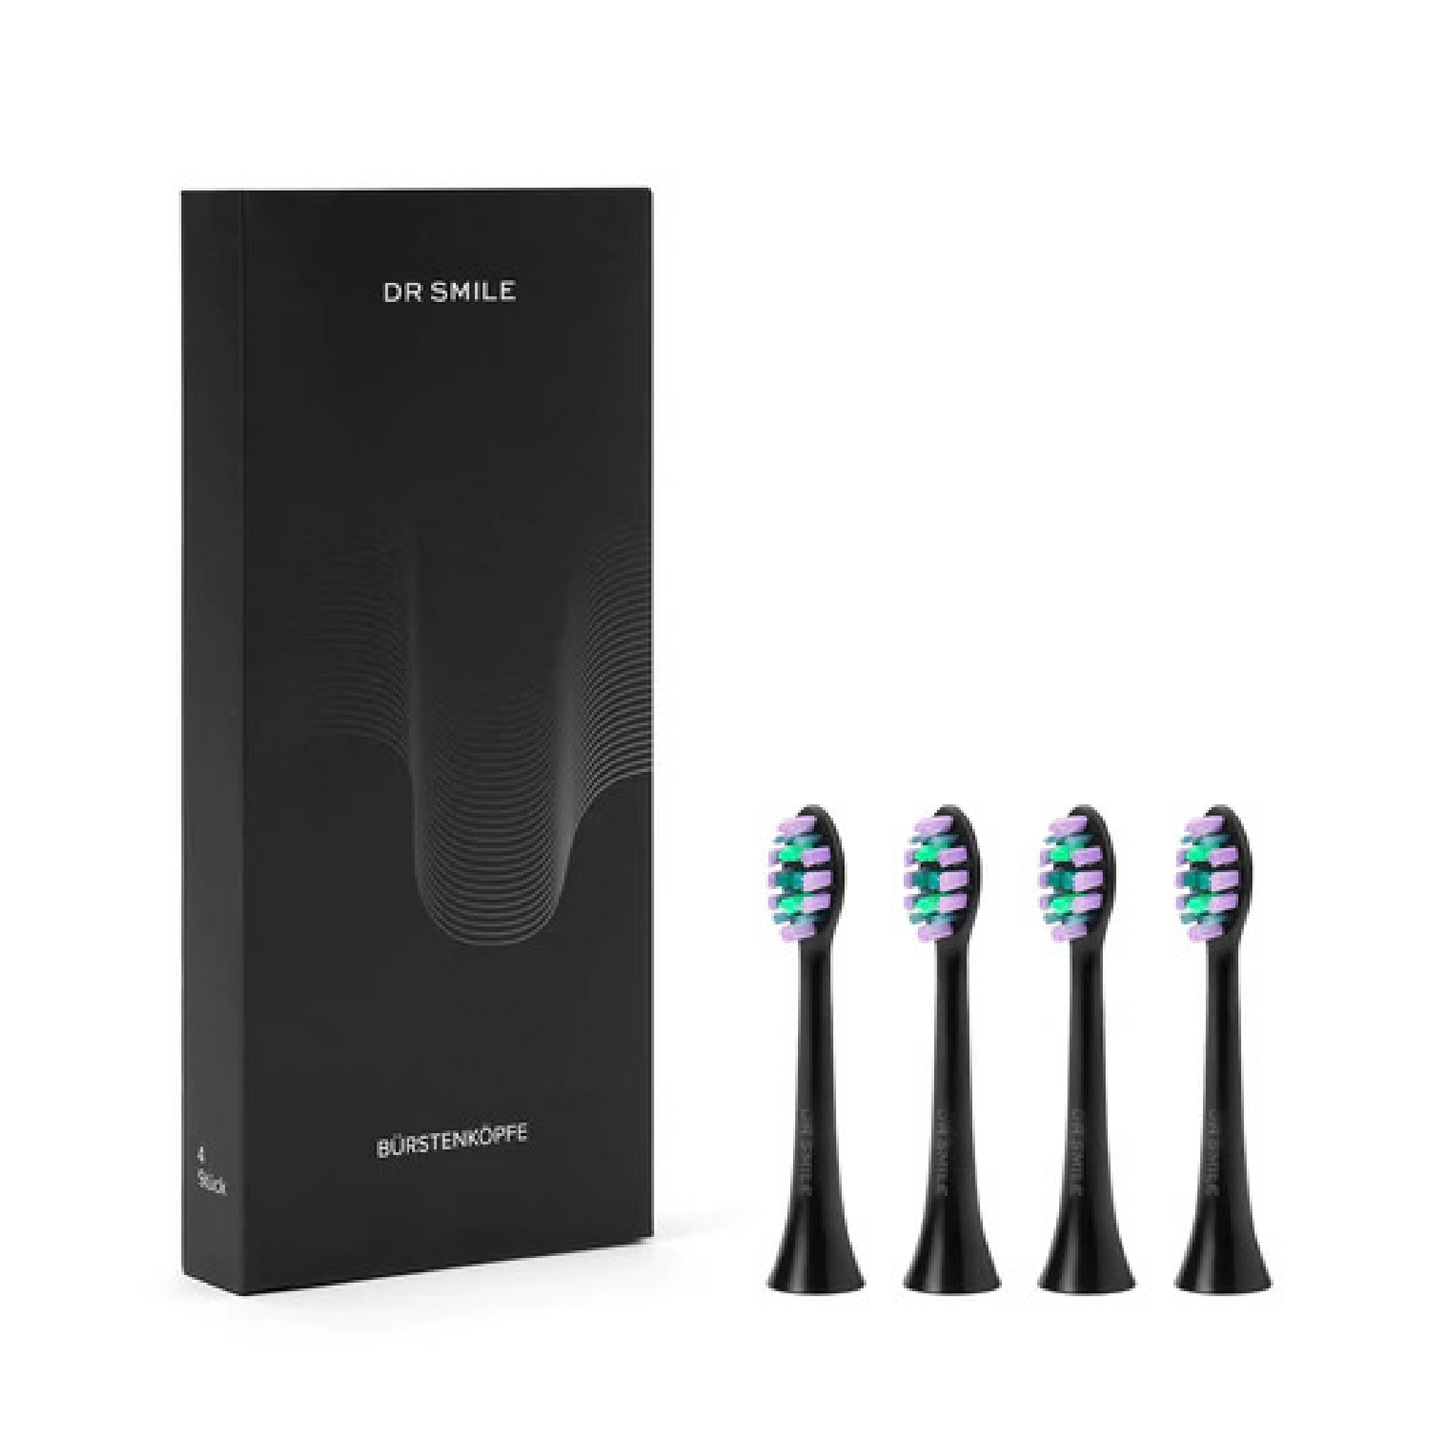 Opzetborstels voor de DR SMILE sonische tandenborstel, set van 4, zwart